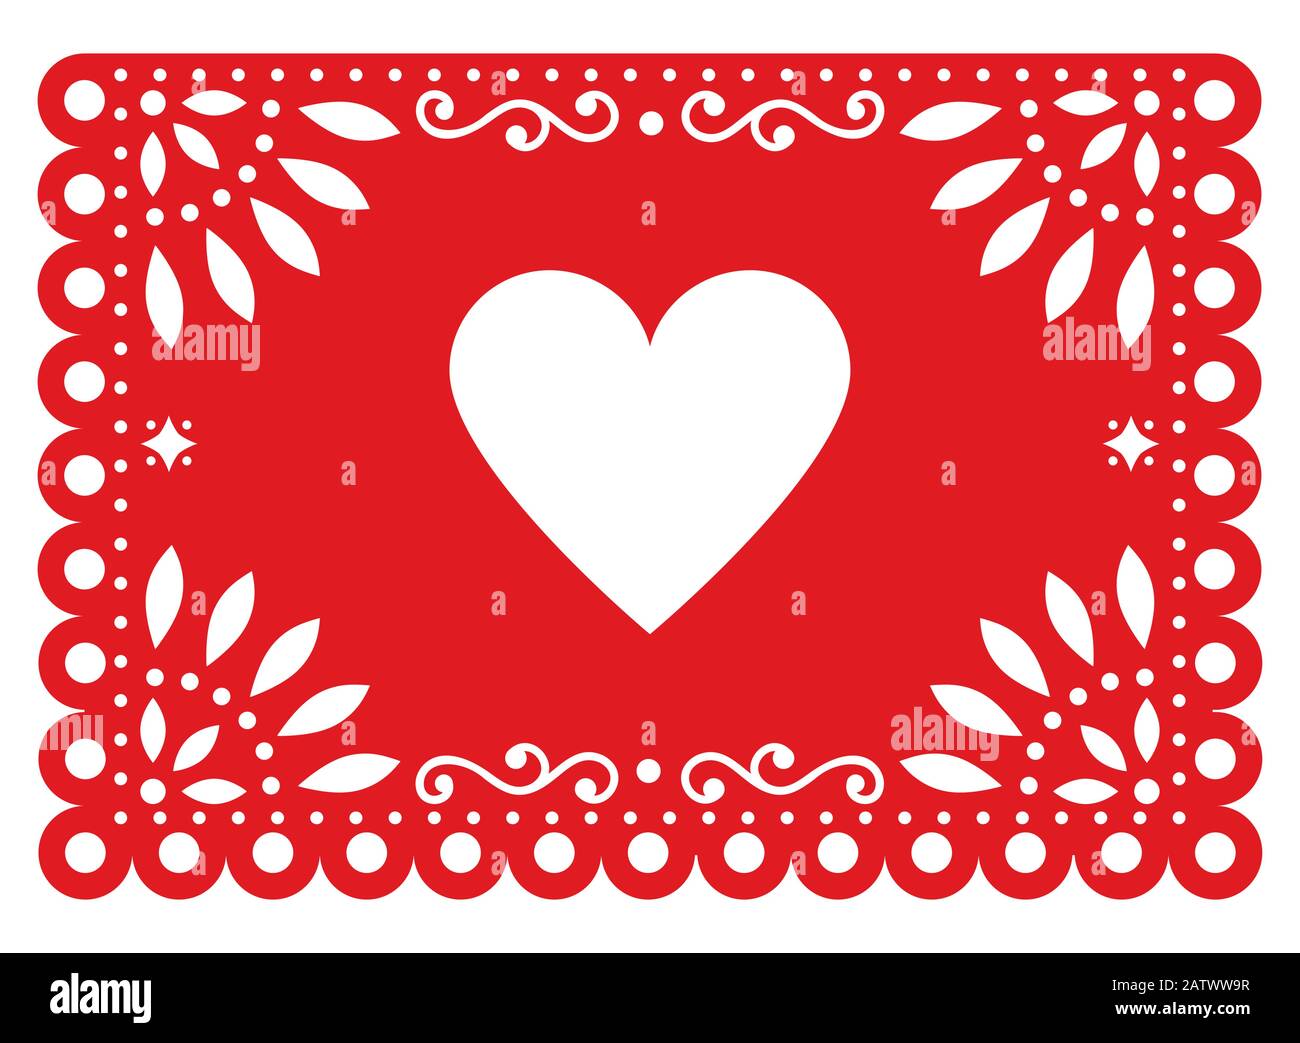 Design vettoriale Papel Picado per San Valentino con forma a cuore, carta rossa messicana decorazione con fiori e forme geometriche Illustrazione Vettoriale